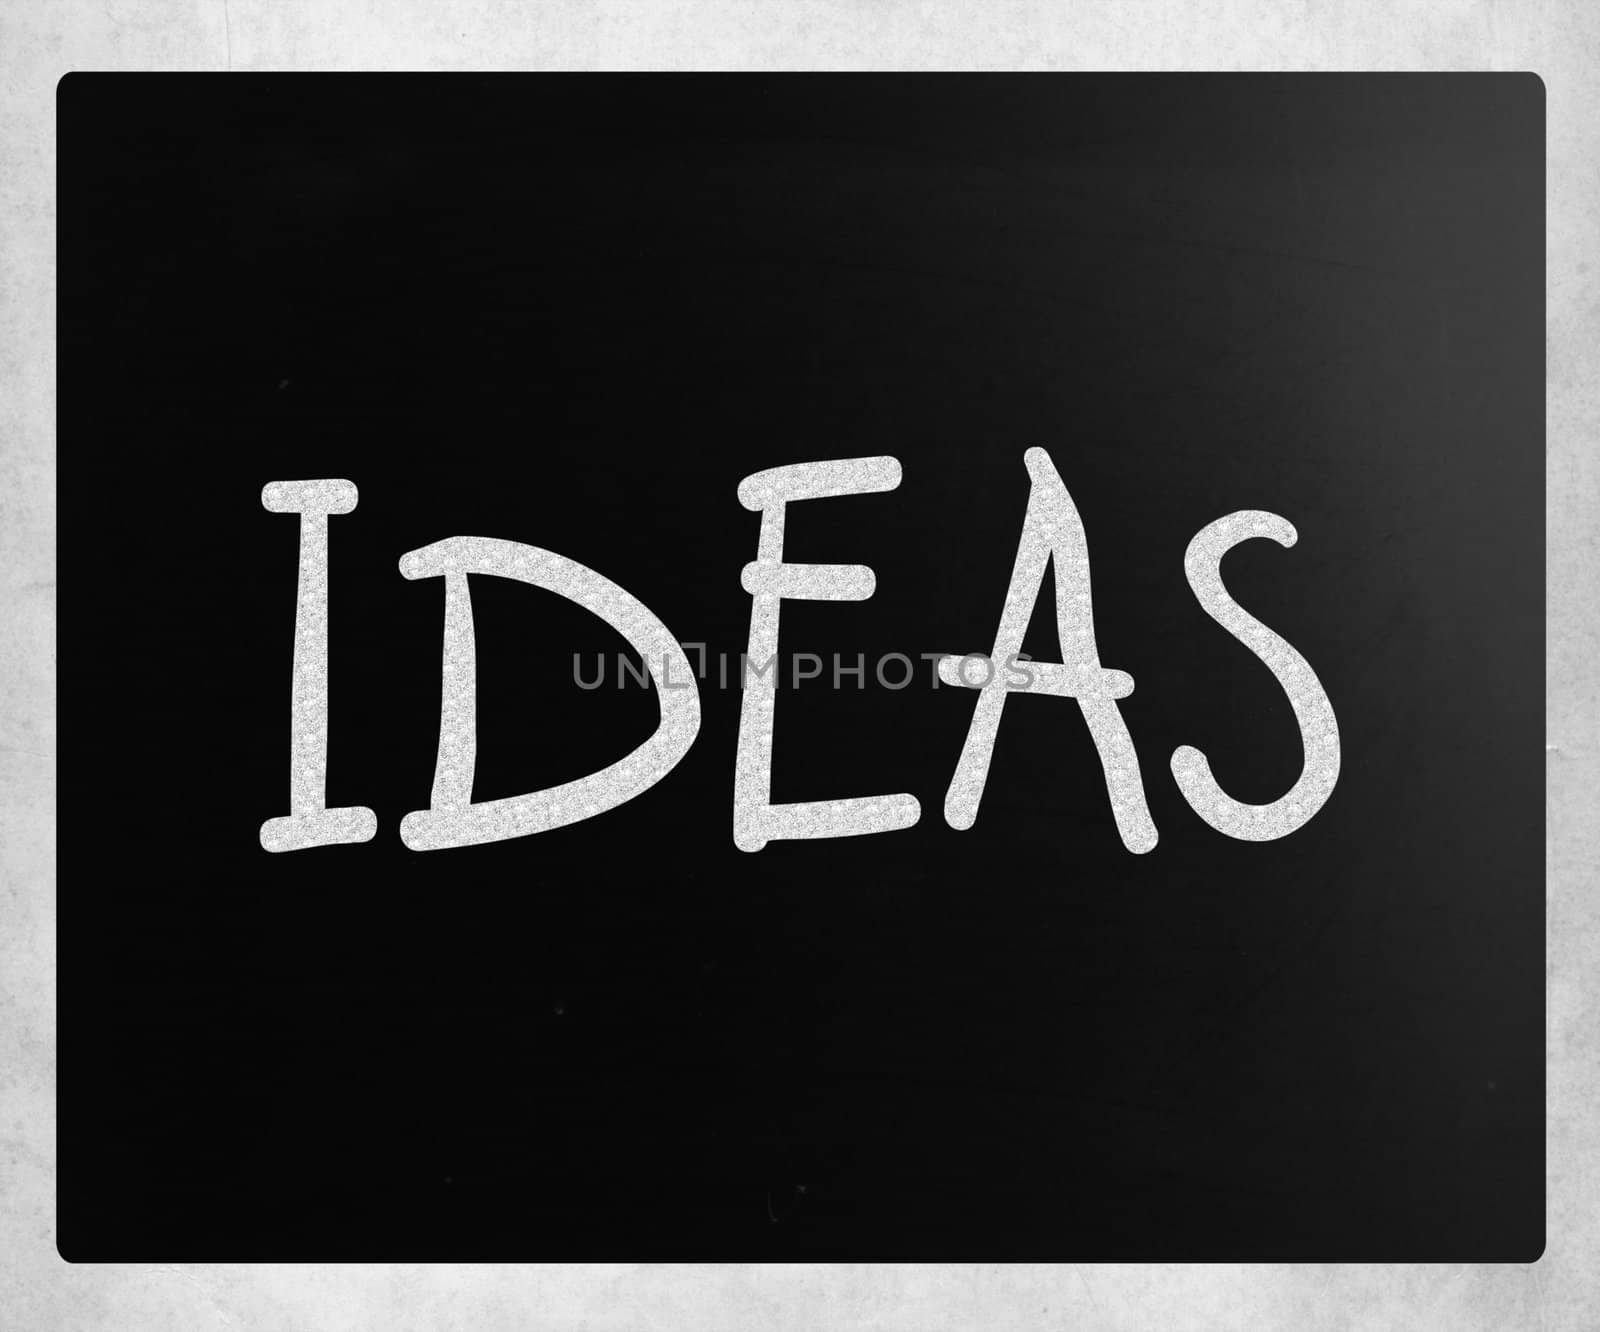 "Ideas" handwritten with white chalk on a blackboard